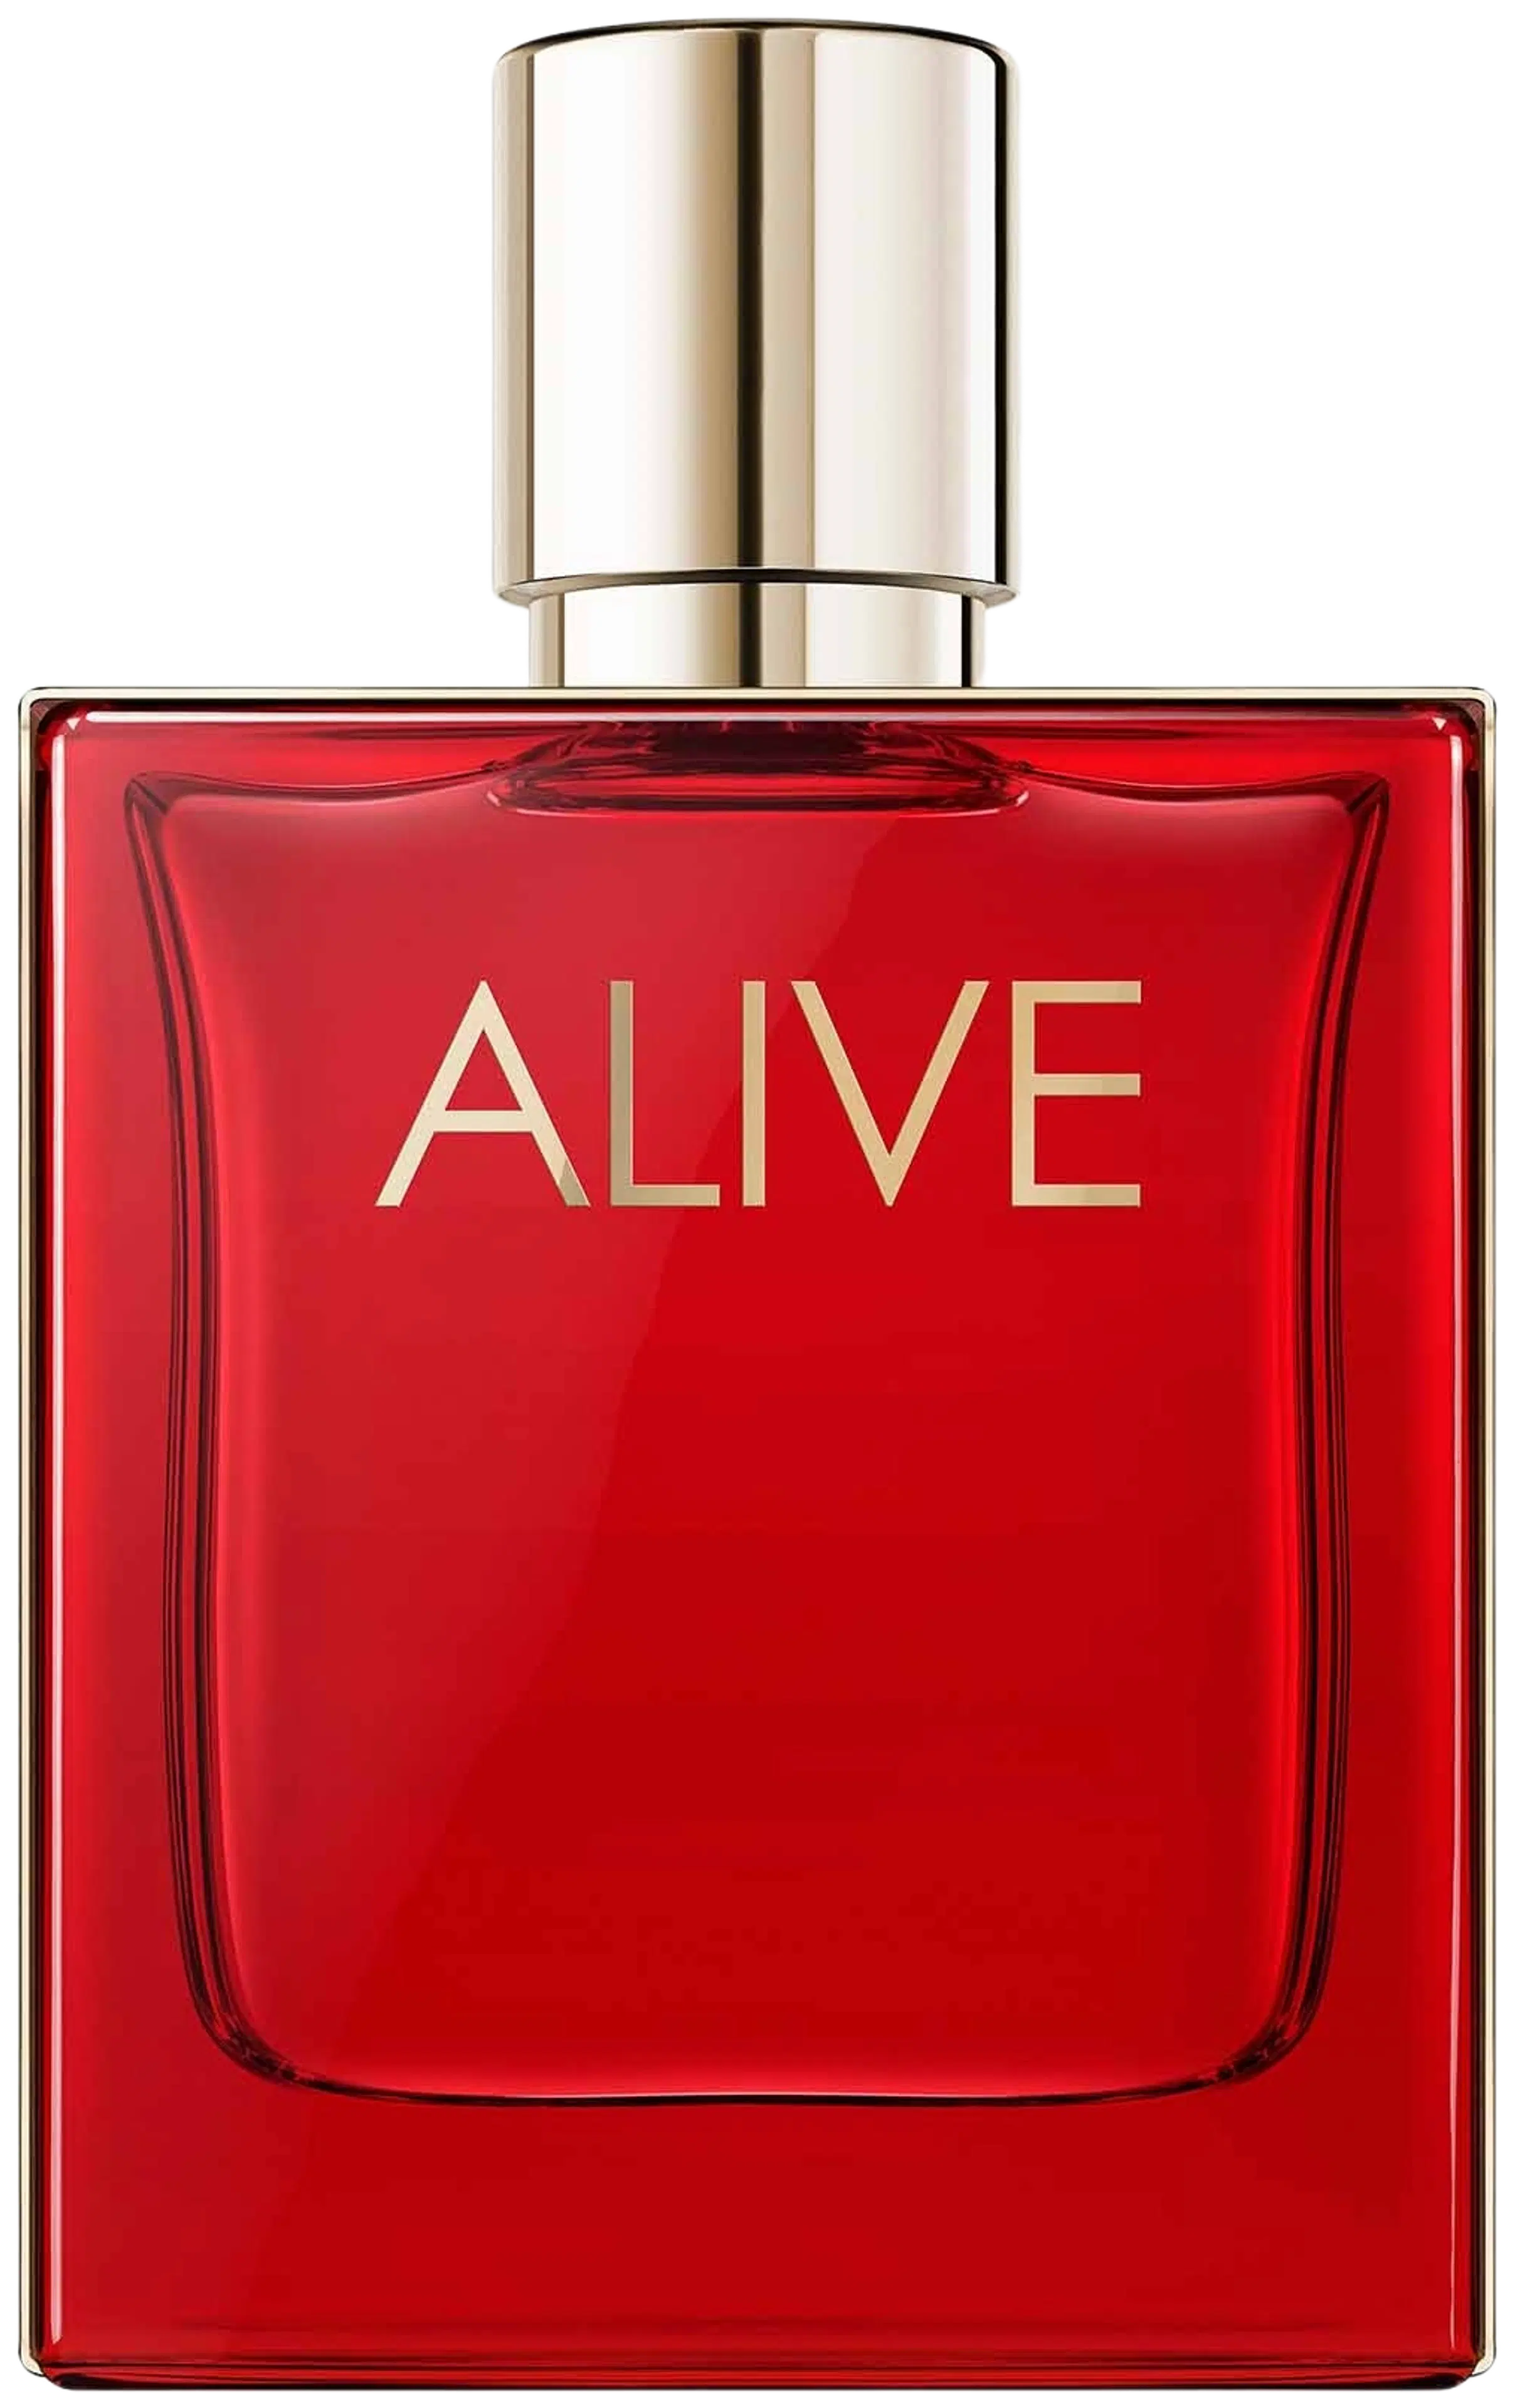 Hugo Boss Alive Parfum tuoksu 50 ml